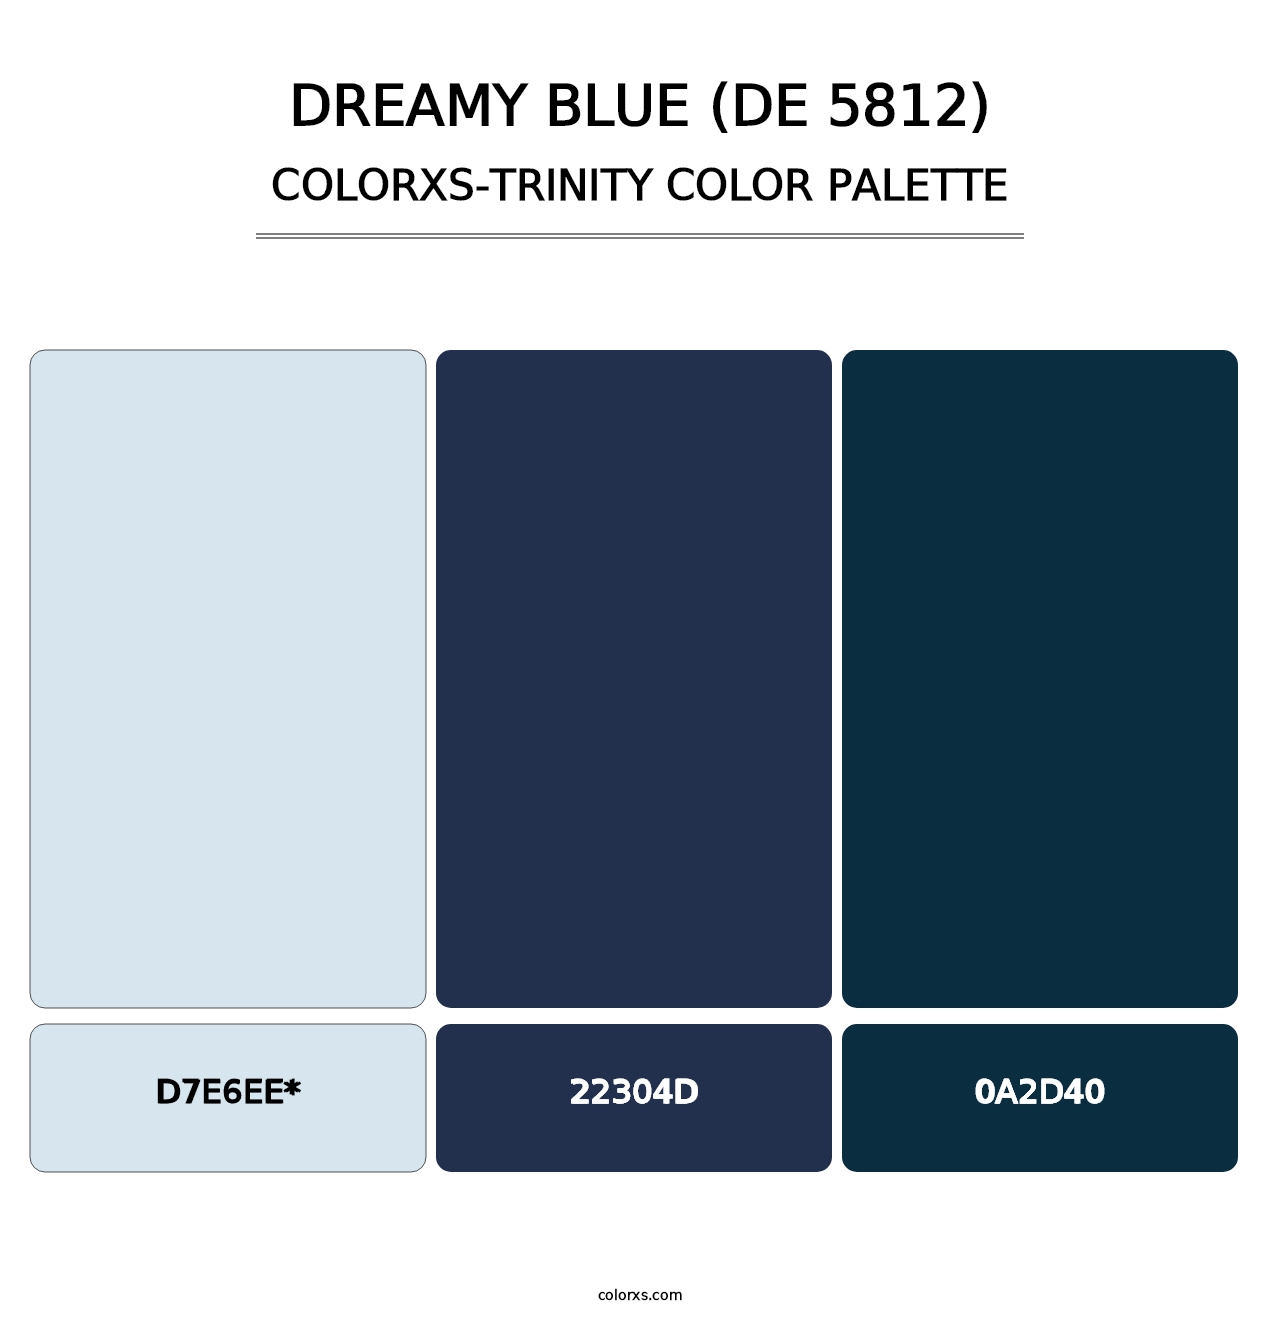 Dreamy Blue (DE 5812) - Colorxs Trinity Palette